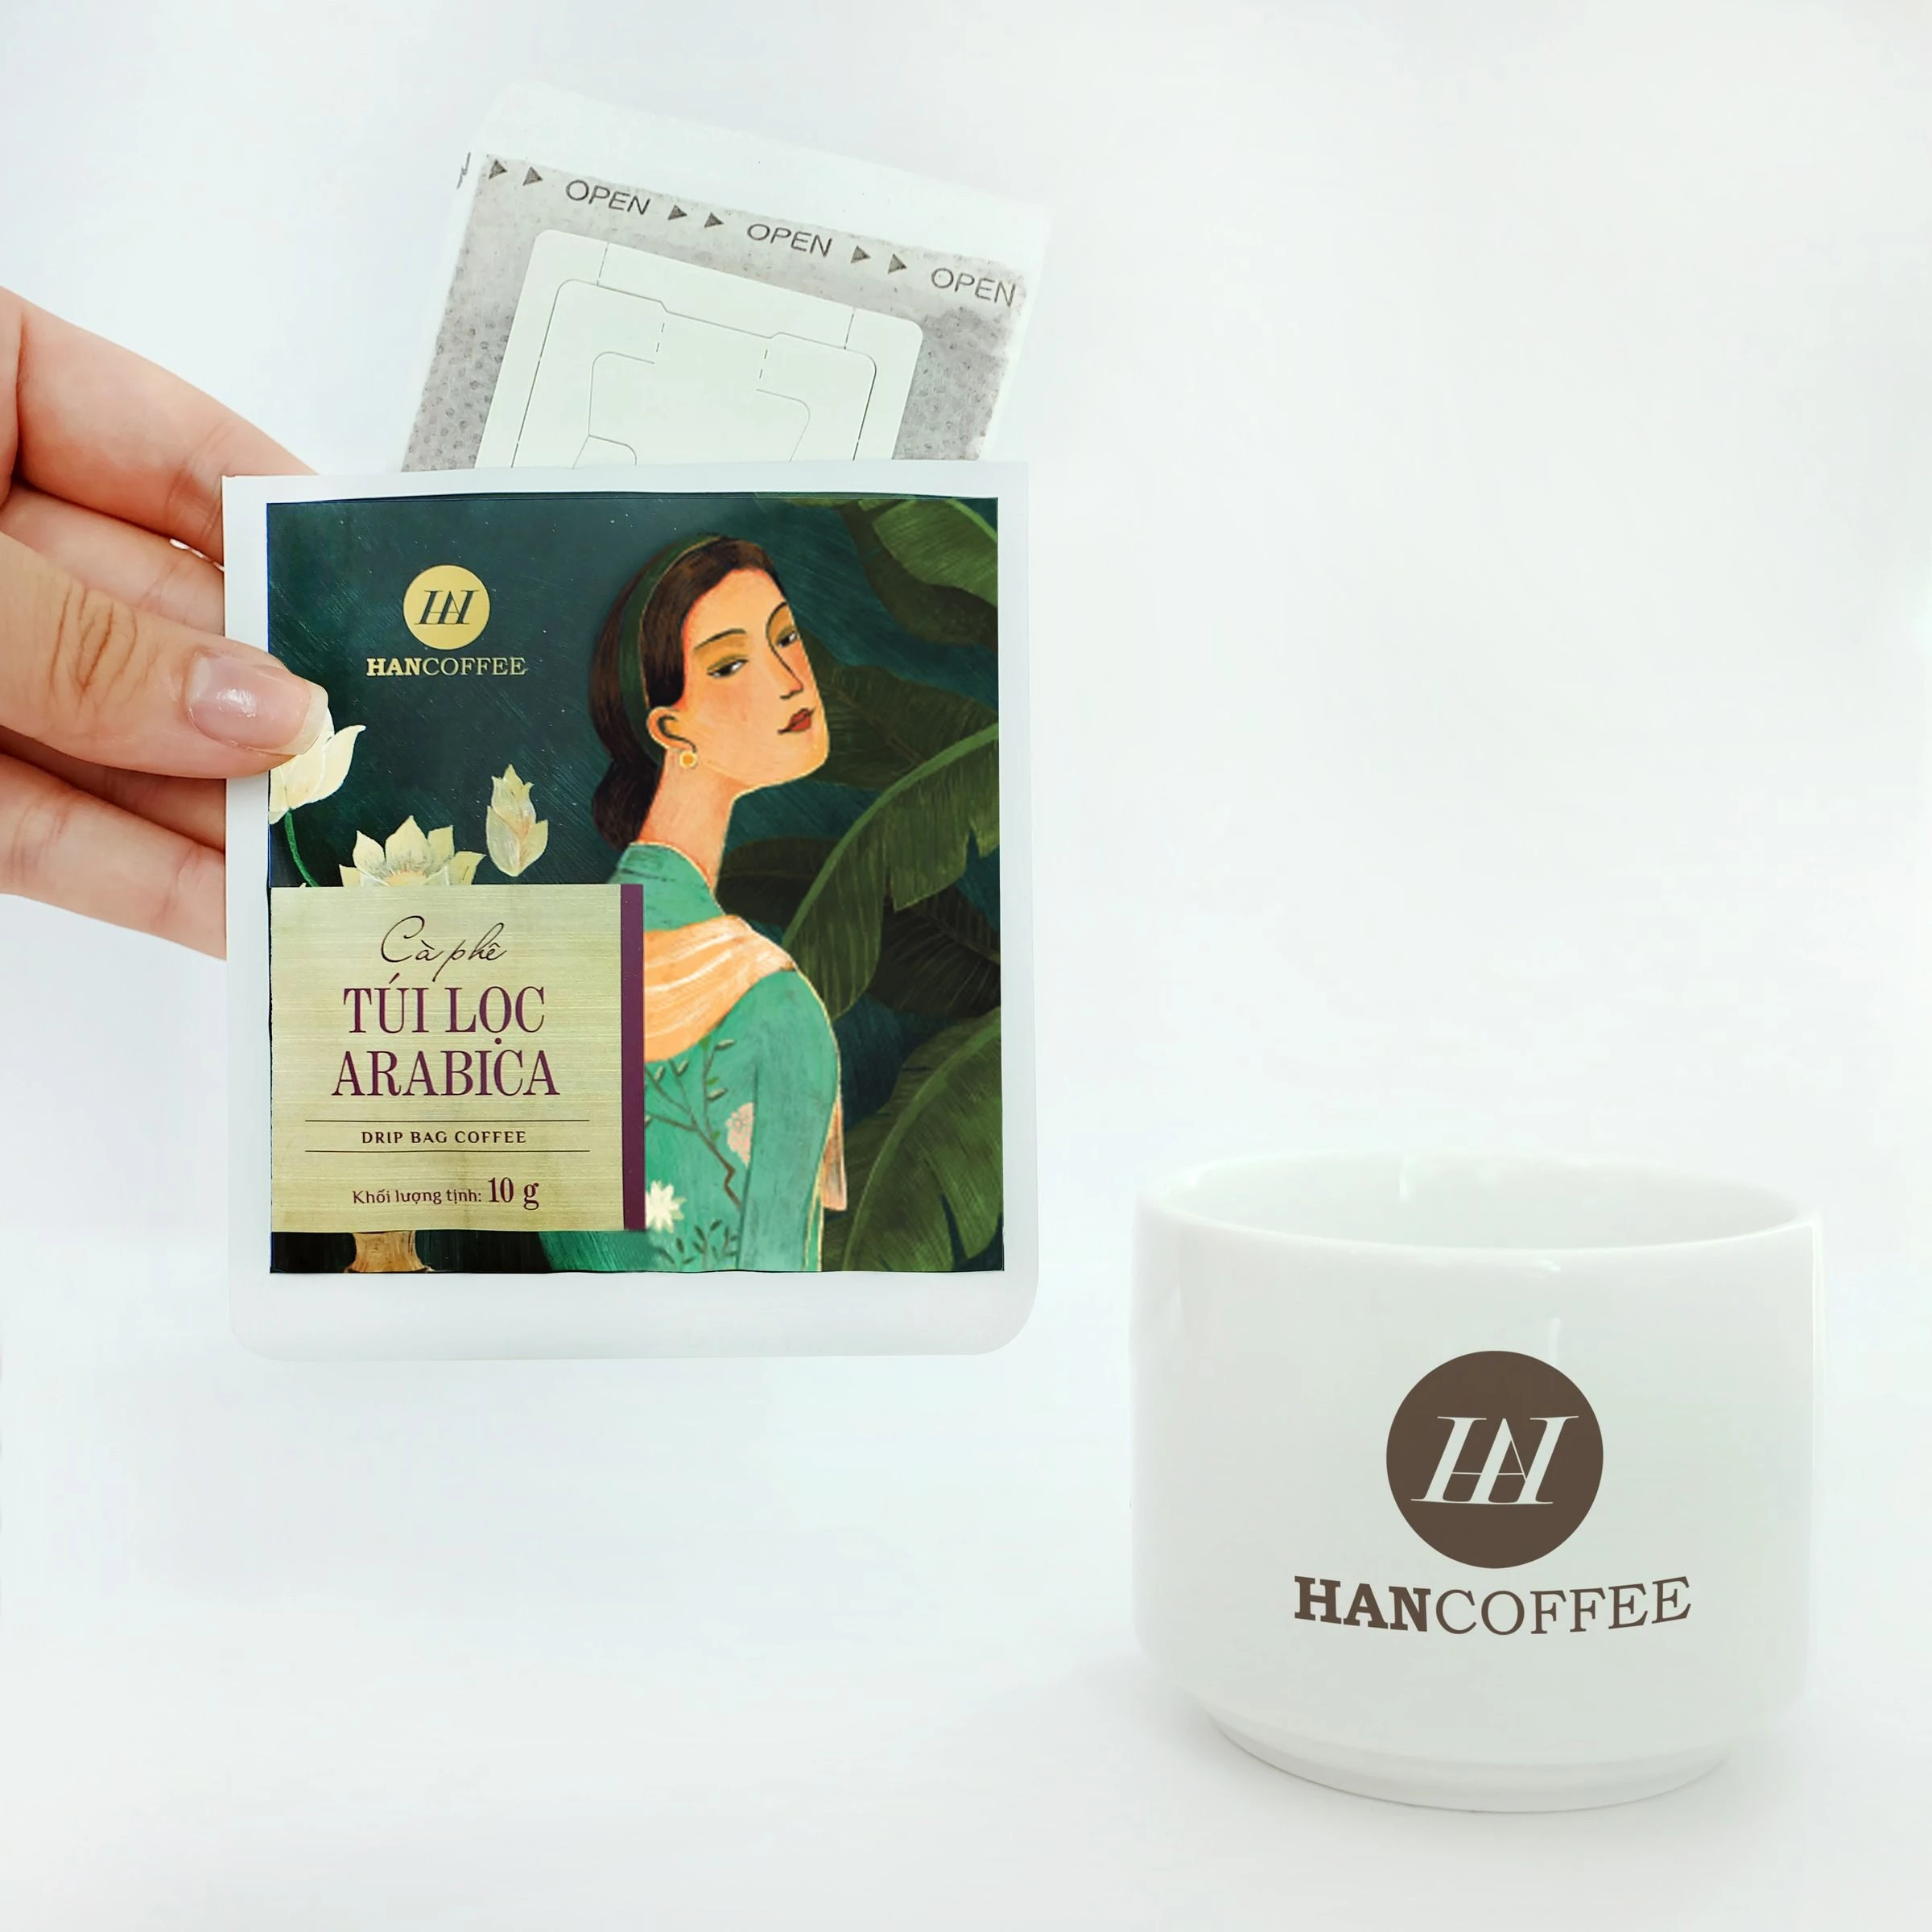 Drip Bag Blend & Arabica Premium High-quality Coffee